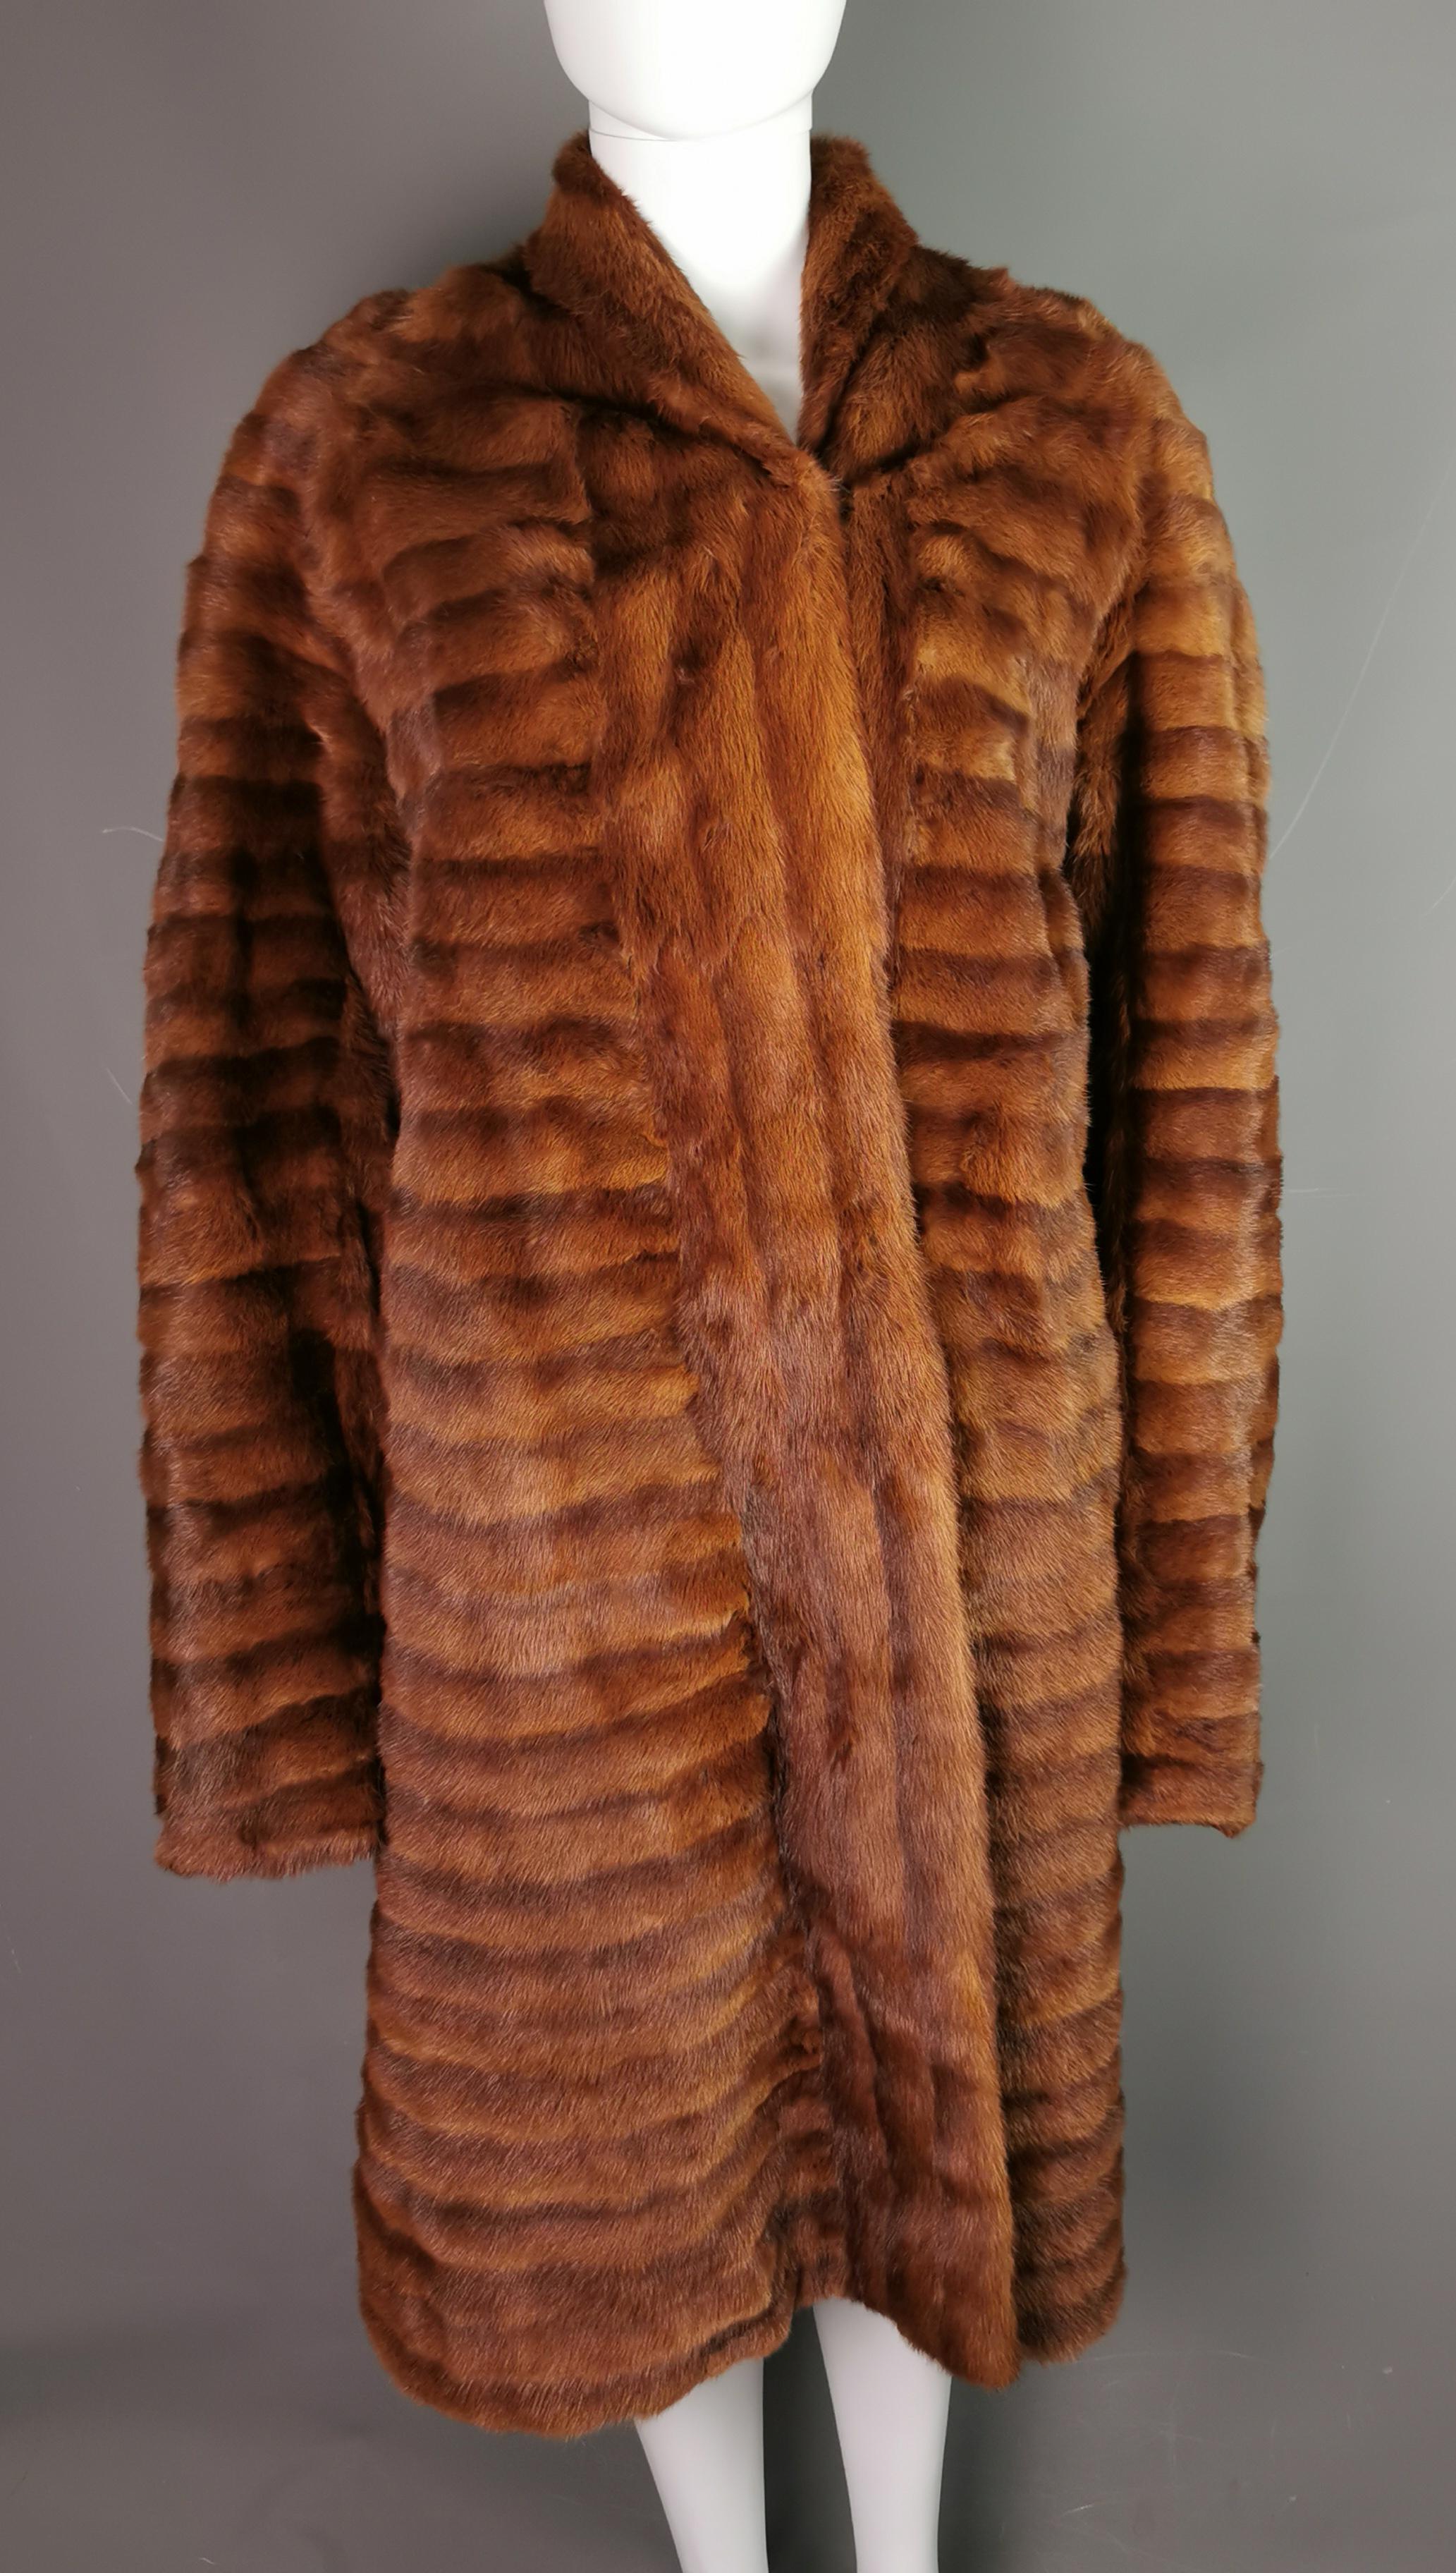 Un manteau de fourrure de coney vintage des années 1970.

Il est de couleur brun rougeâtre, de grande longueur et possède une peau fine et lisse.

Le manteau est doté d'un col court et d'une fermeture enveloppante qui s'attache à l'aide de crochets